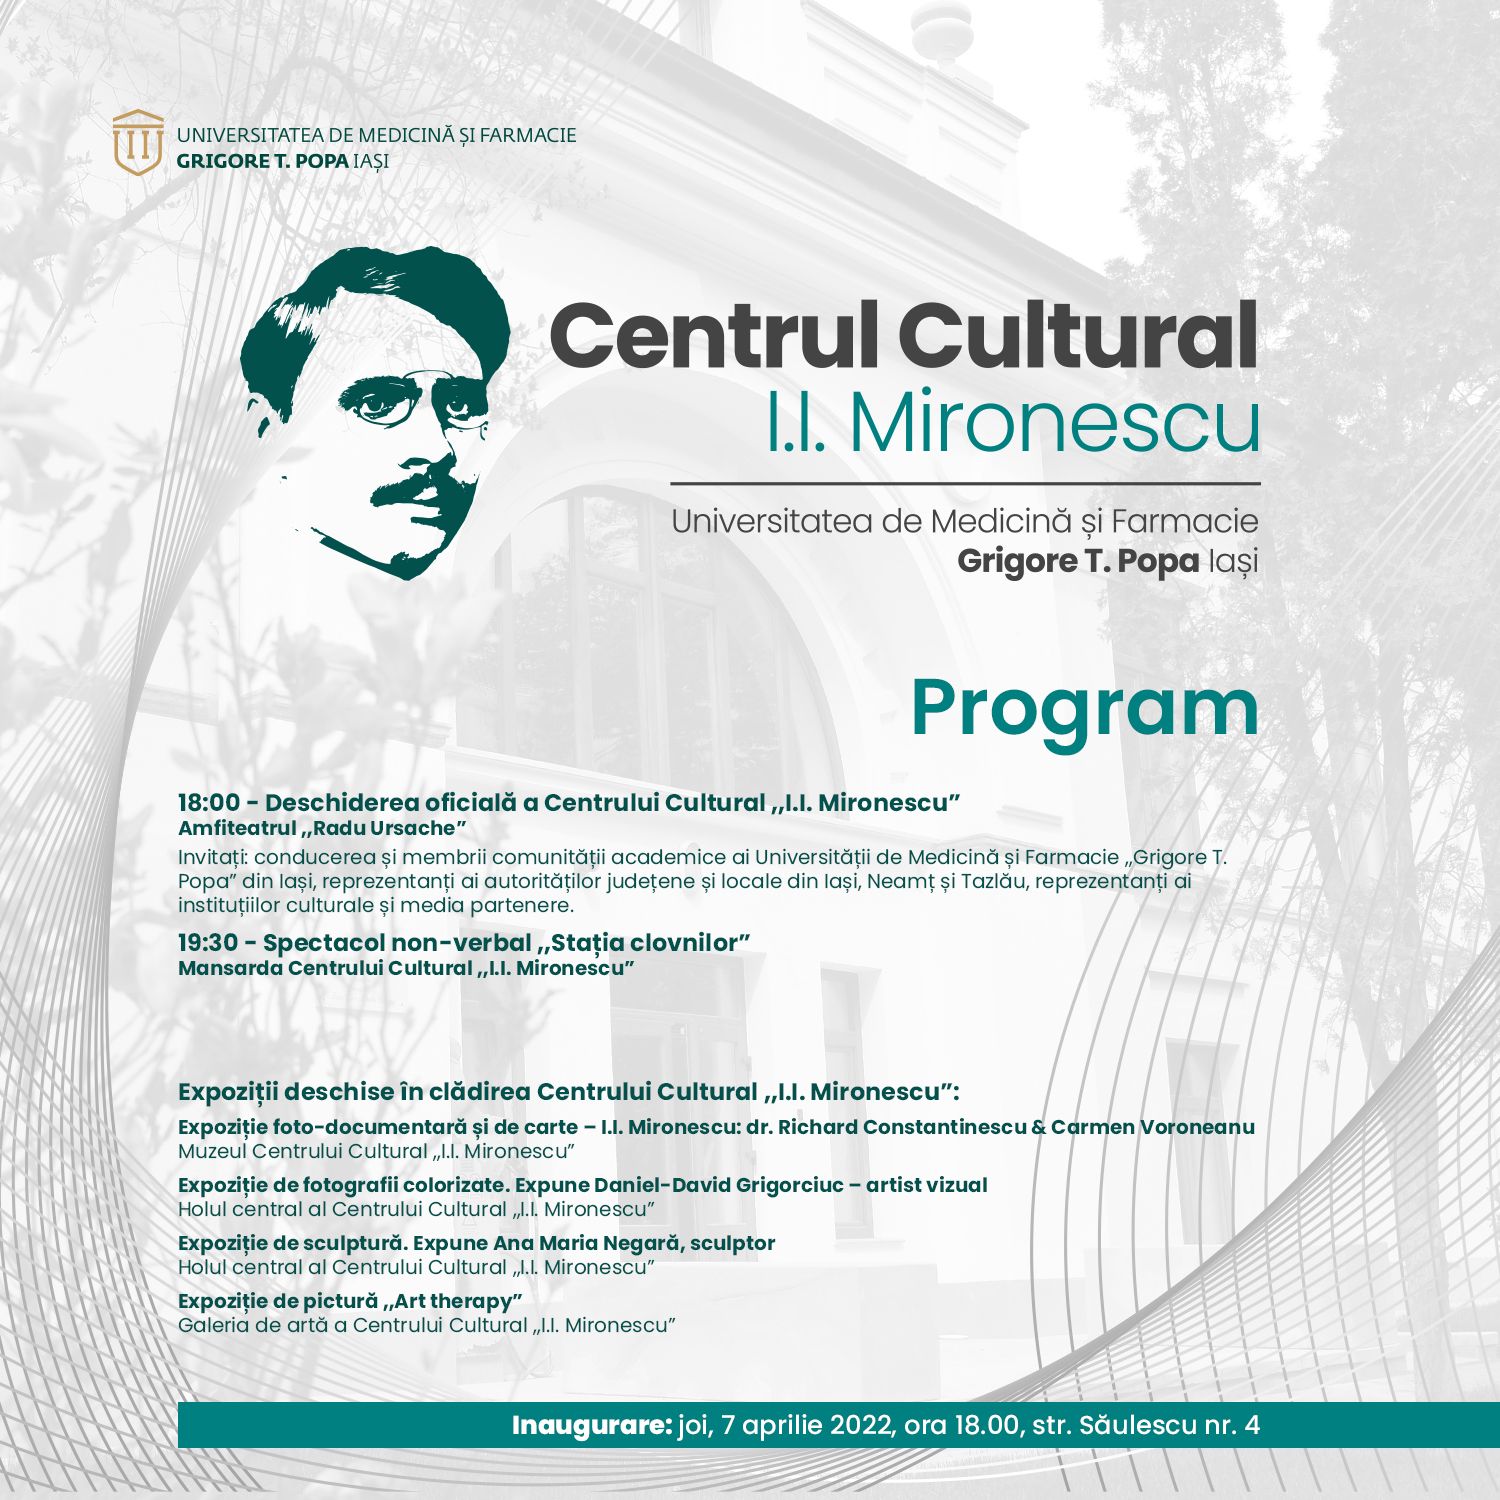 Mironescu_inaugurare_program